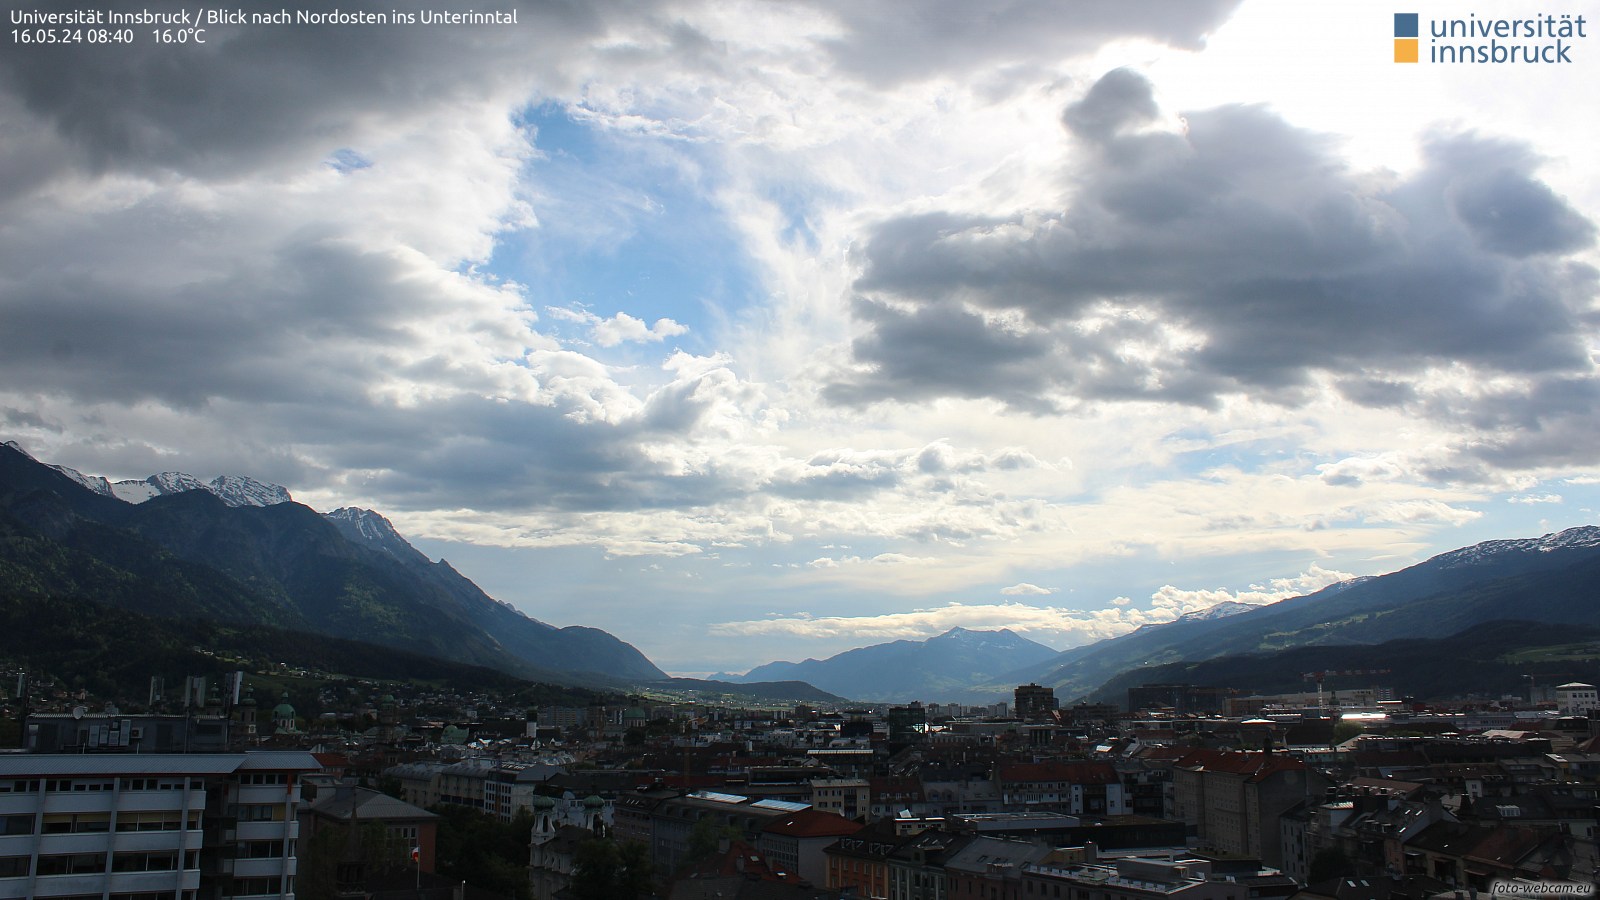 Innsbruck Richtung Nordosten, Standort Uni Innsbruck, Quelle: foto-webcam.eu